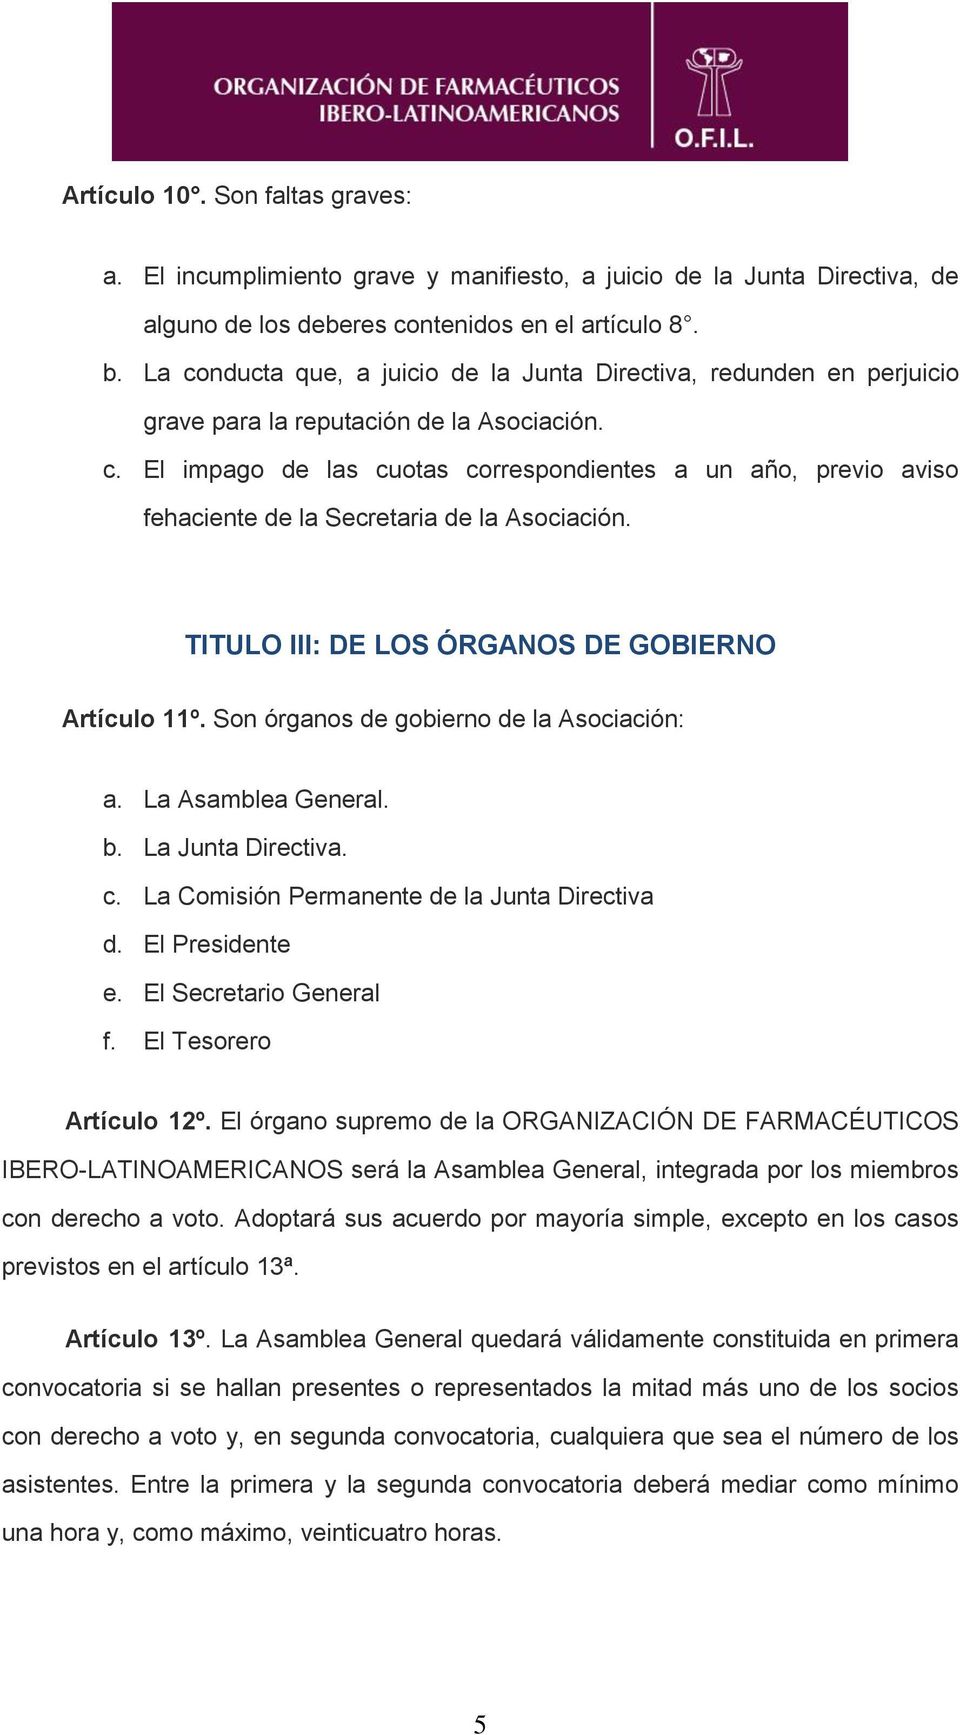 TITULO III: DE LOS ÓRGANOS DE GOBIERNO Artículo 11º. Son órganos de gobierno de la Asociación: a. La Asamblea General. b. La Junta Directiva. c. La Comisión Permanente de la Junta Directiva d.